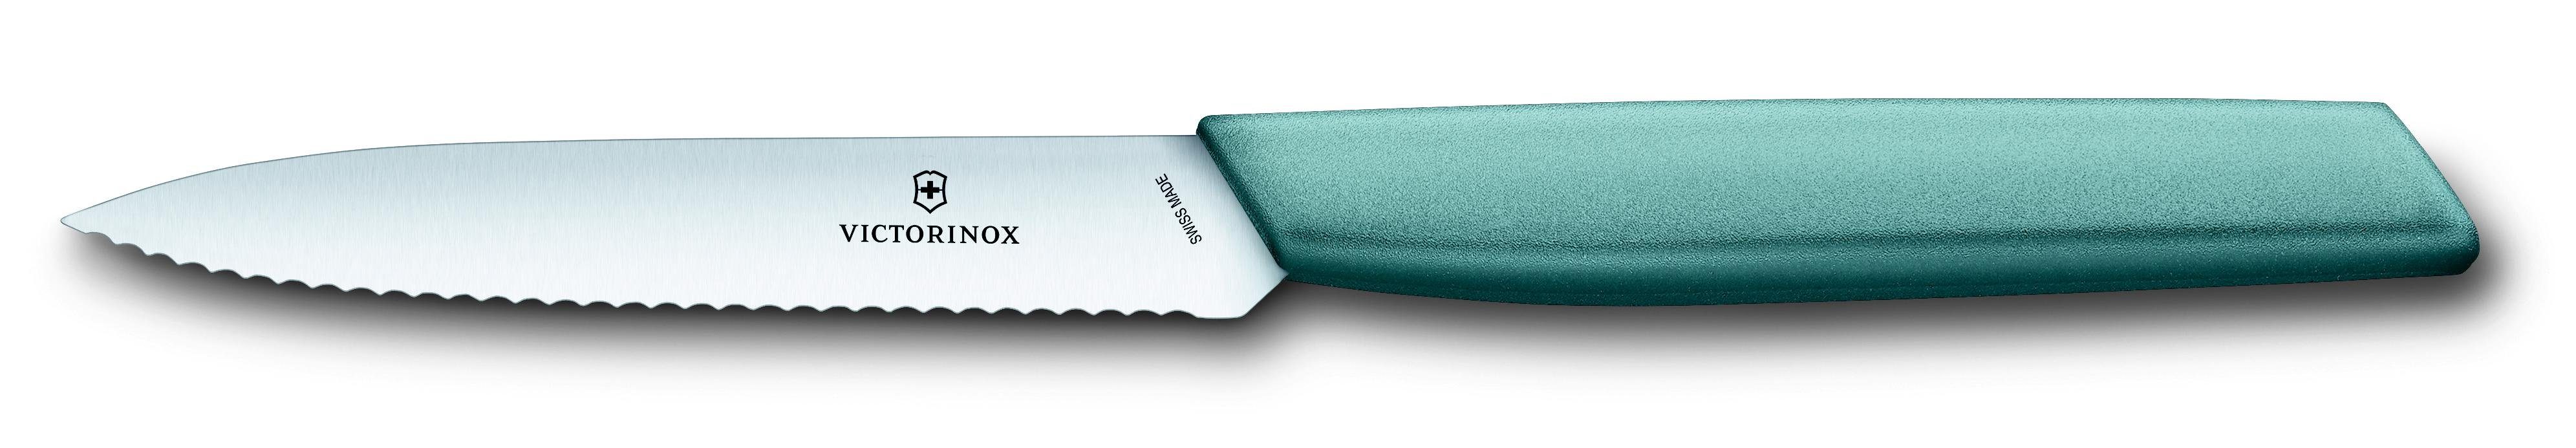 wavy, Victorinox Paring knife, Taschenmesser arona 10 cm,